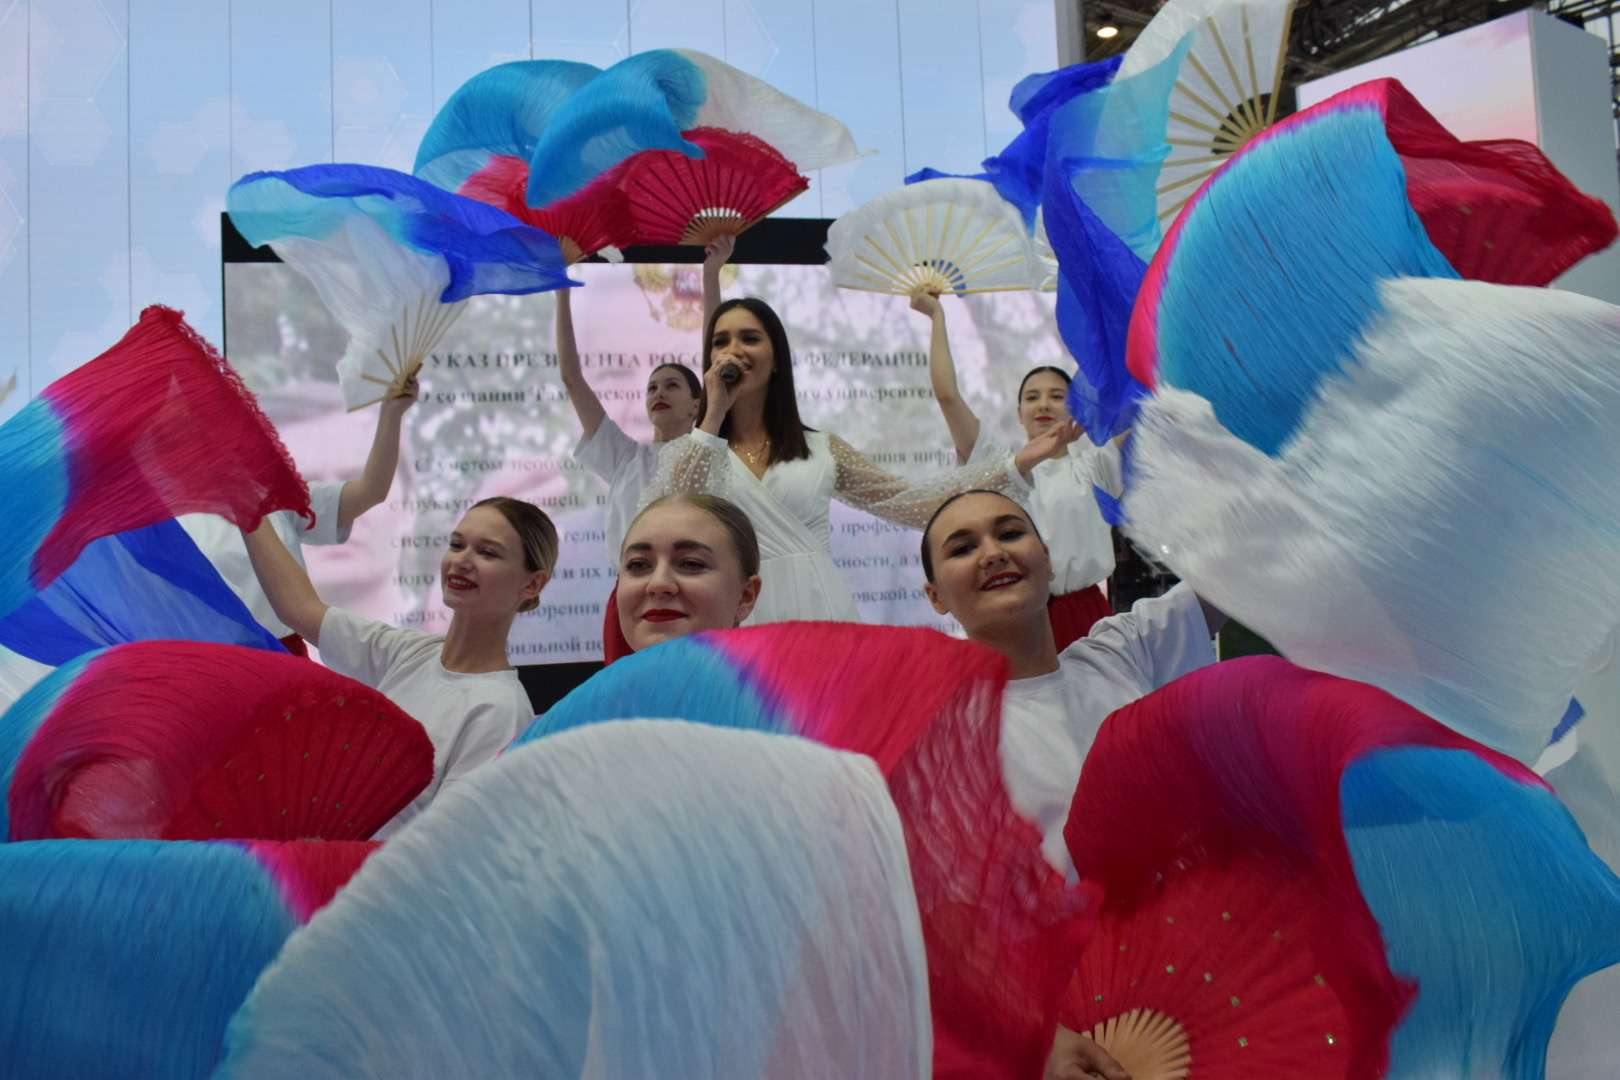 Державинцы отмечают Международный день студента вместе с посетителями выставки-форума «Россия» на ВДНХ фото анонса